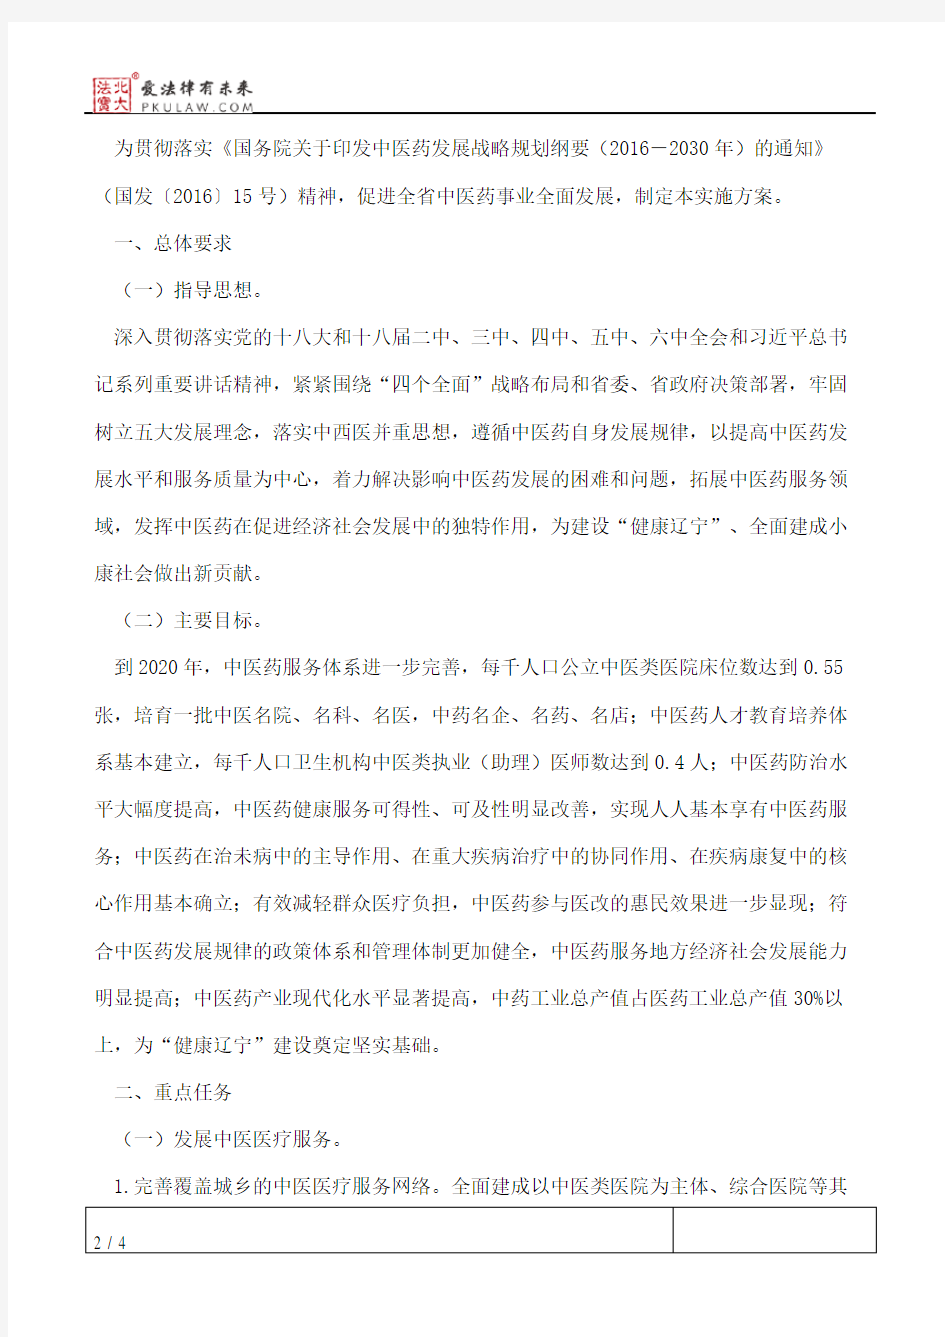 辽宁省人民政府关于印发促进中医药发展实施方案(2016―2020年)的通知